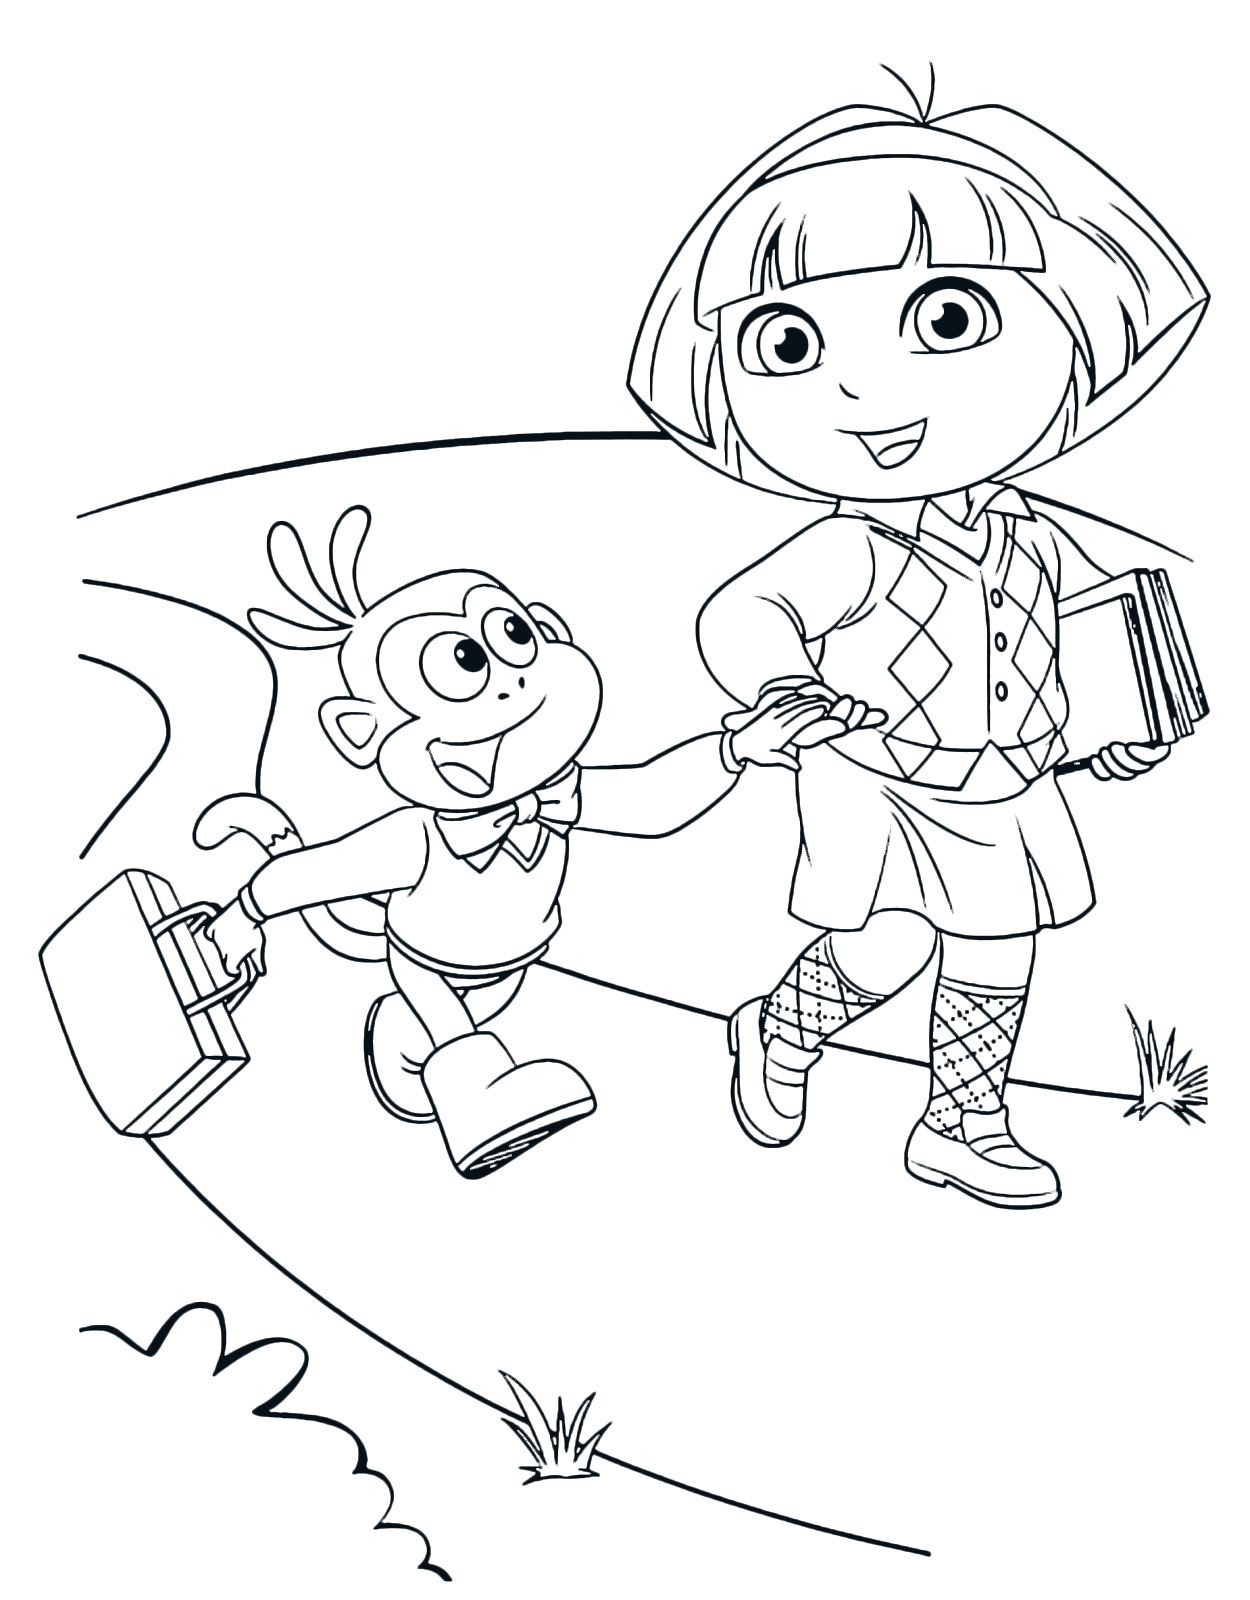 Dora l'esploratrice - Dora e Boots camminano per strada dandosi la mano